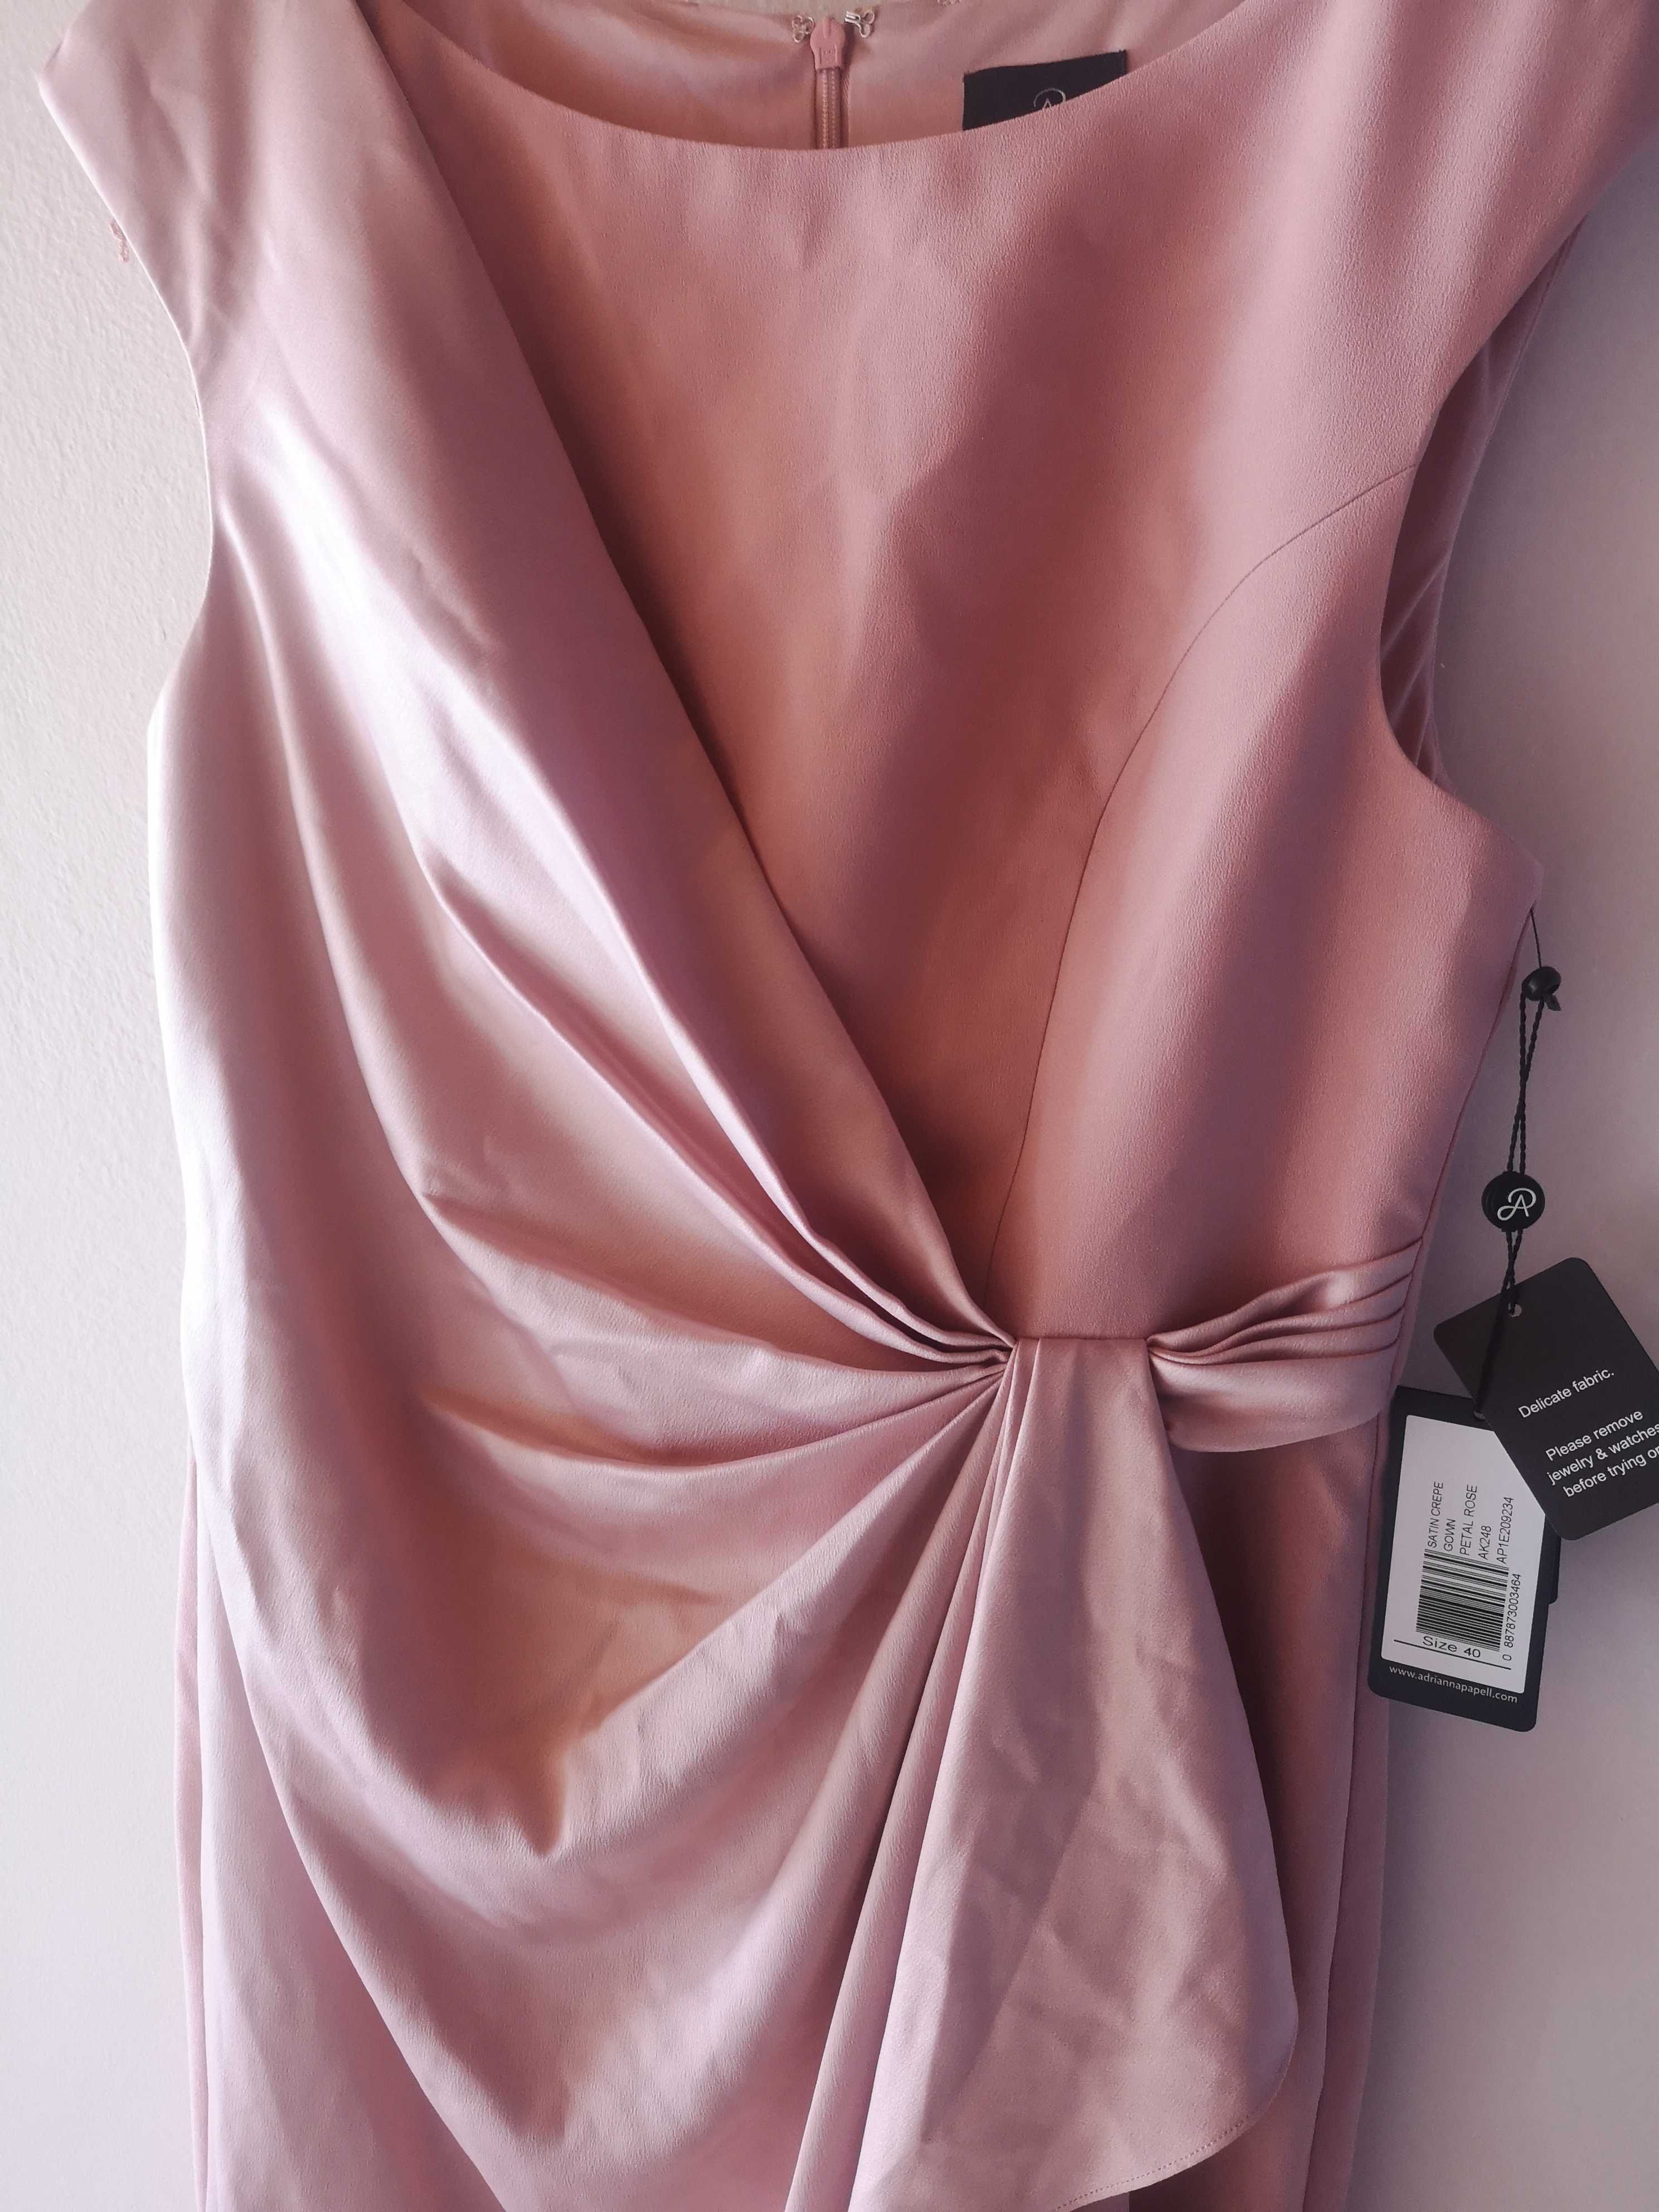 Suknia wieczorowa różowa Adrianna Papell, rozmiar 40